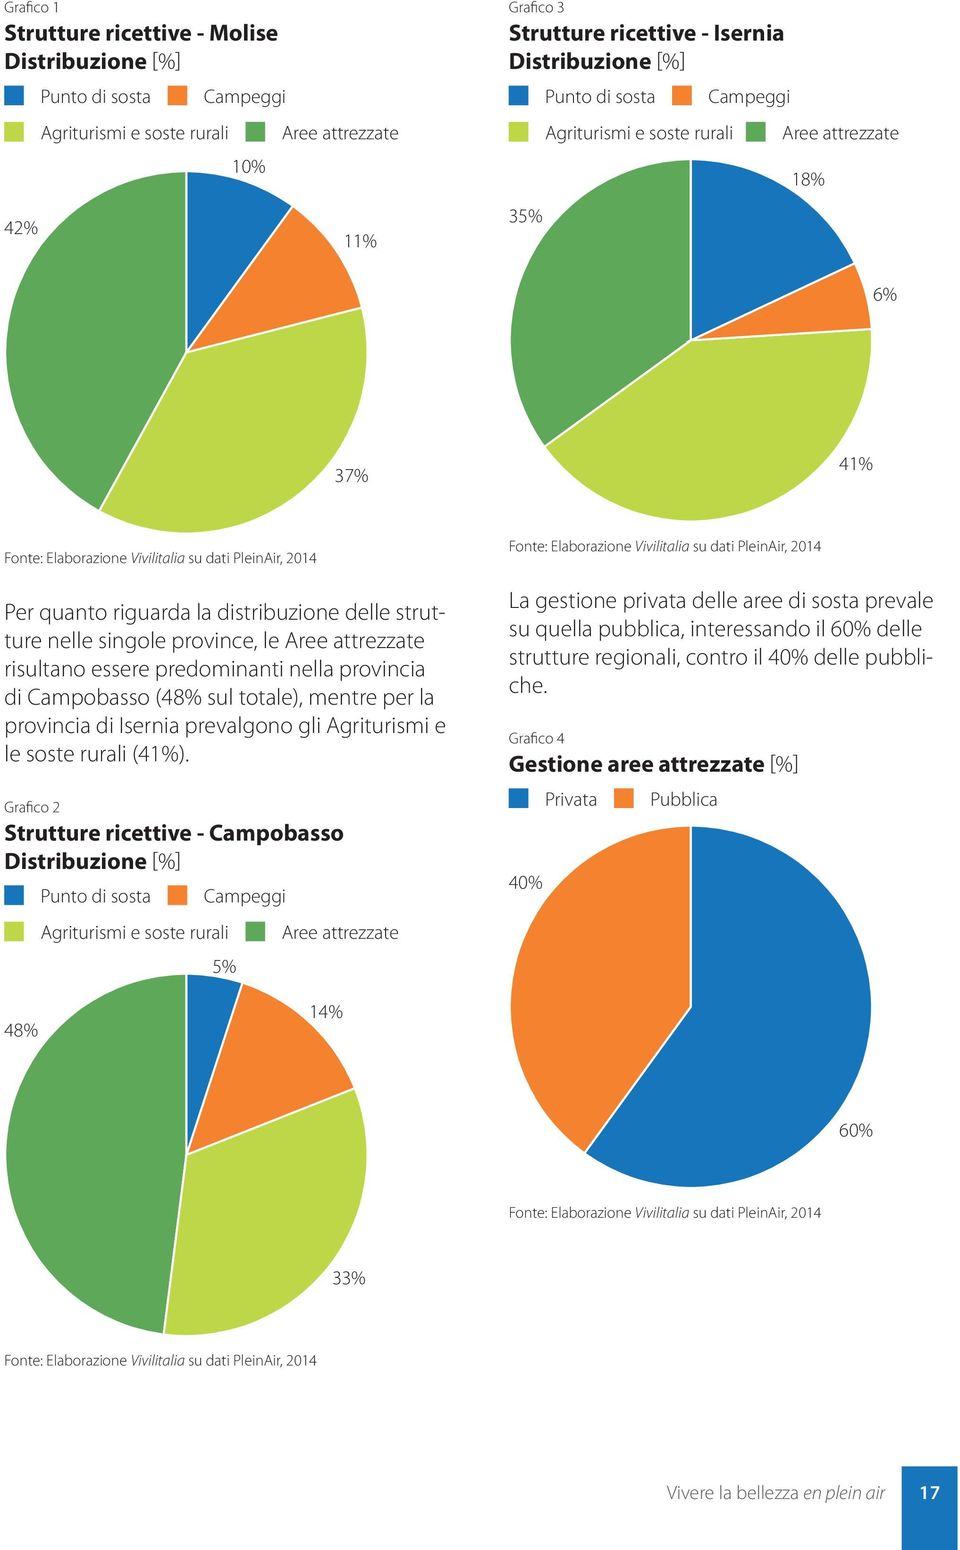 singole province, le Aree attrezzate risultano essere predominanti nella provincia di Campobasso (48% sul totale), mentre per la provincia di Isernia prevalgono gli Agriturismi e le soste rurali